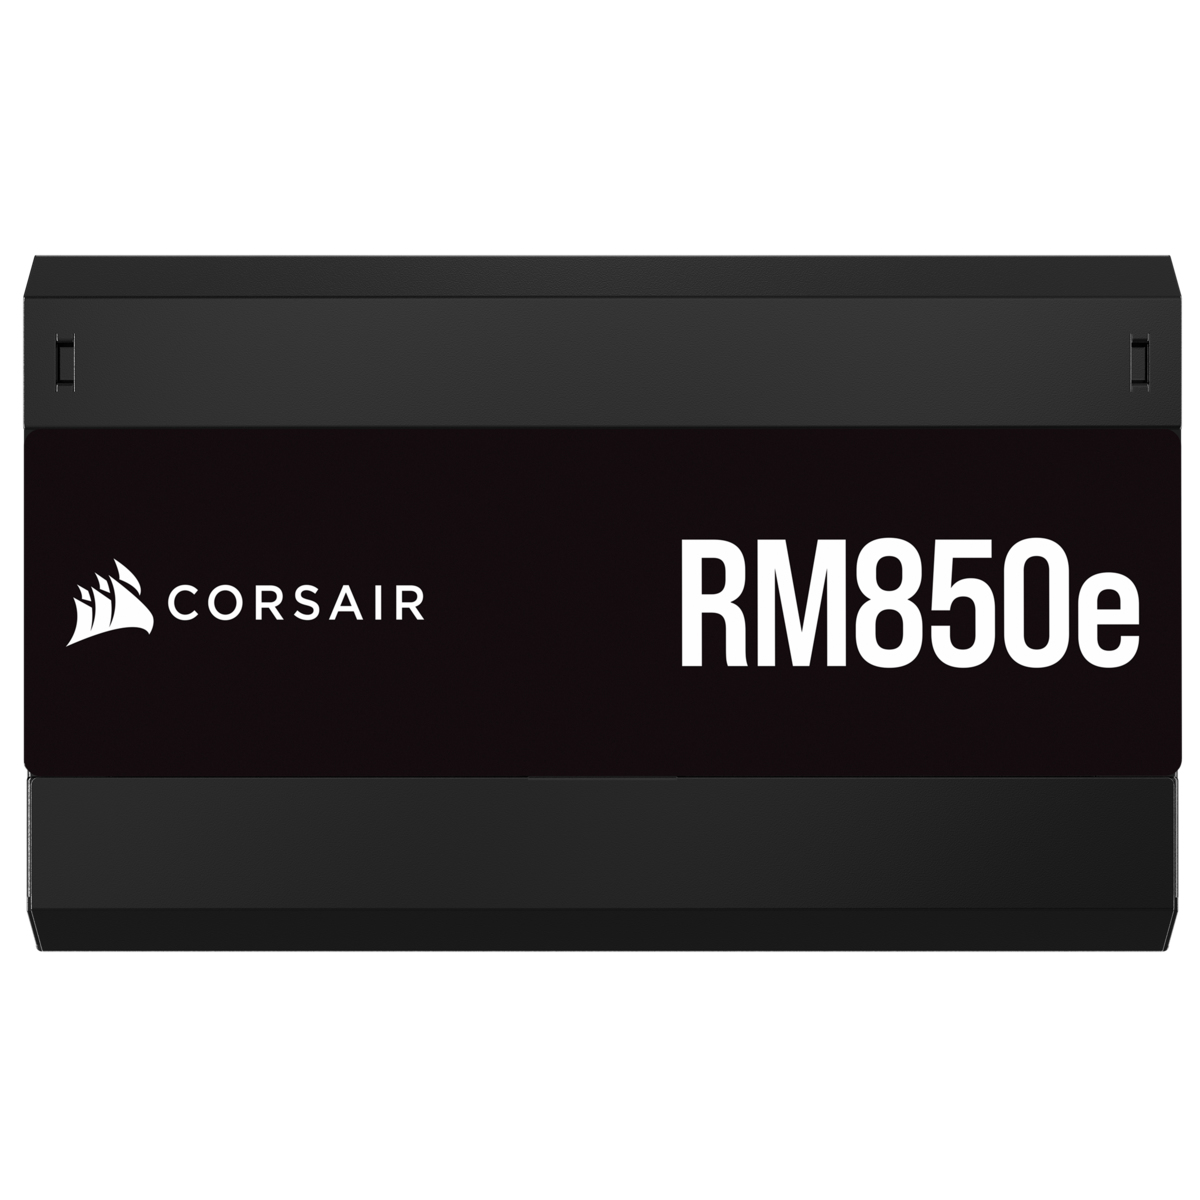 Corsair - Fuente Alimentación Modular Corsair RMx Series RM850e 850W 80 Plus Gold ATX3.0